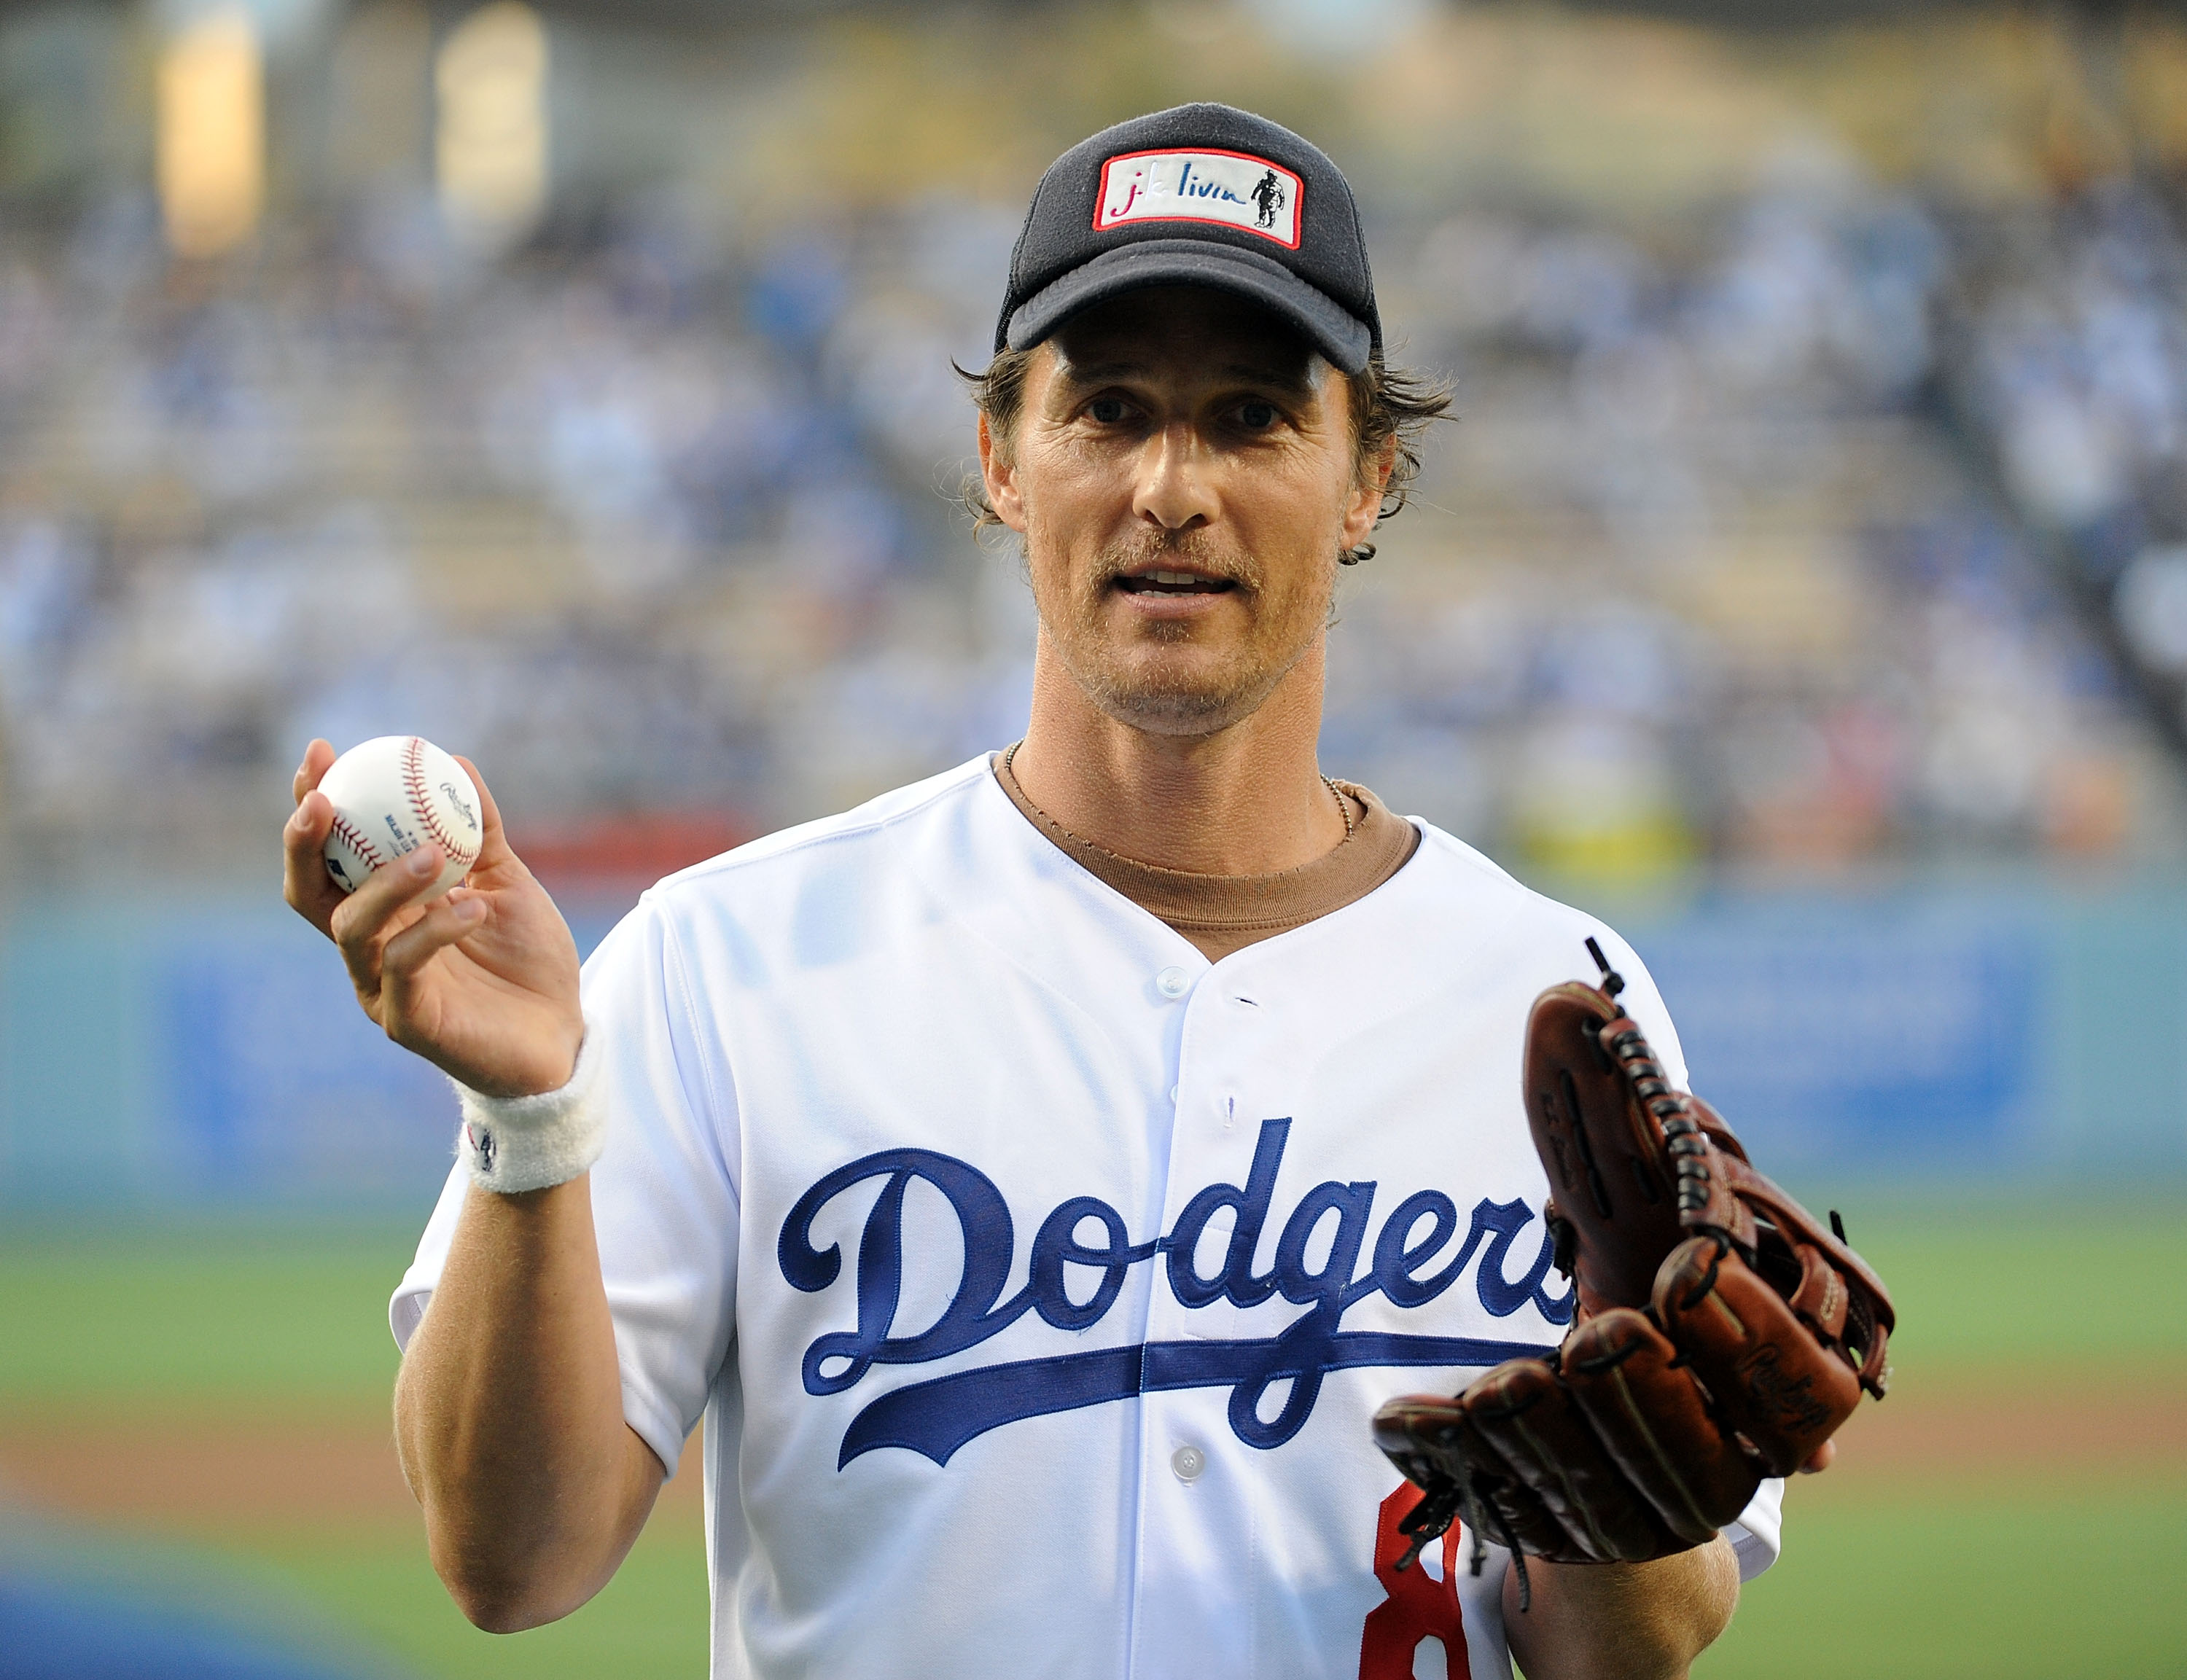 Los Angeles Dodgers' hot streak has celebrities, fans cheering